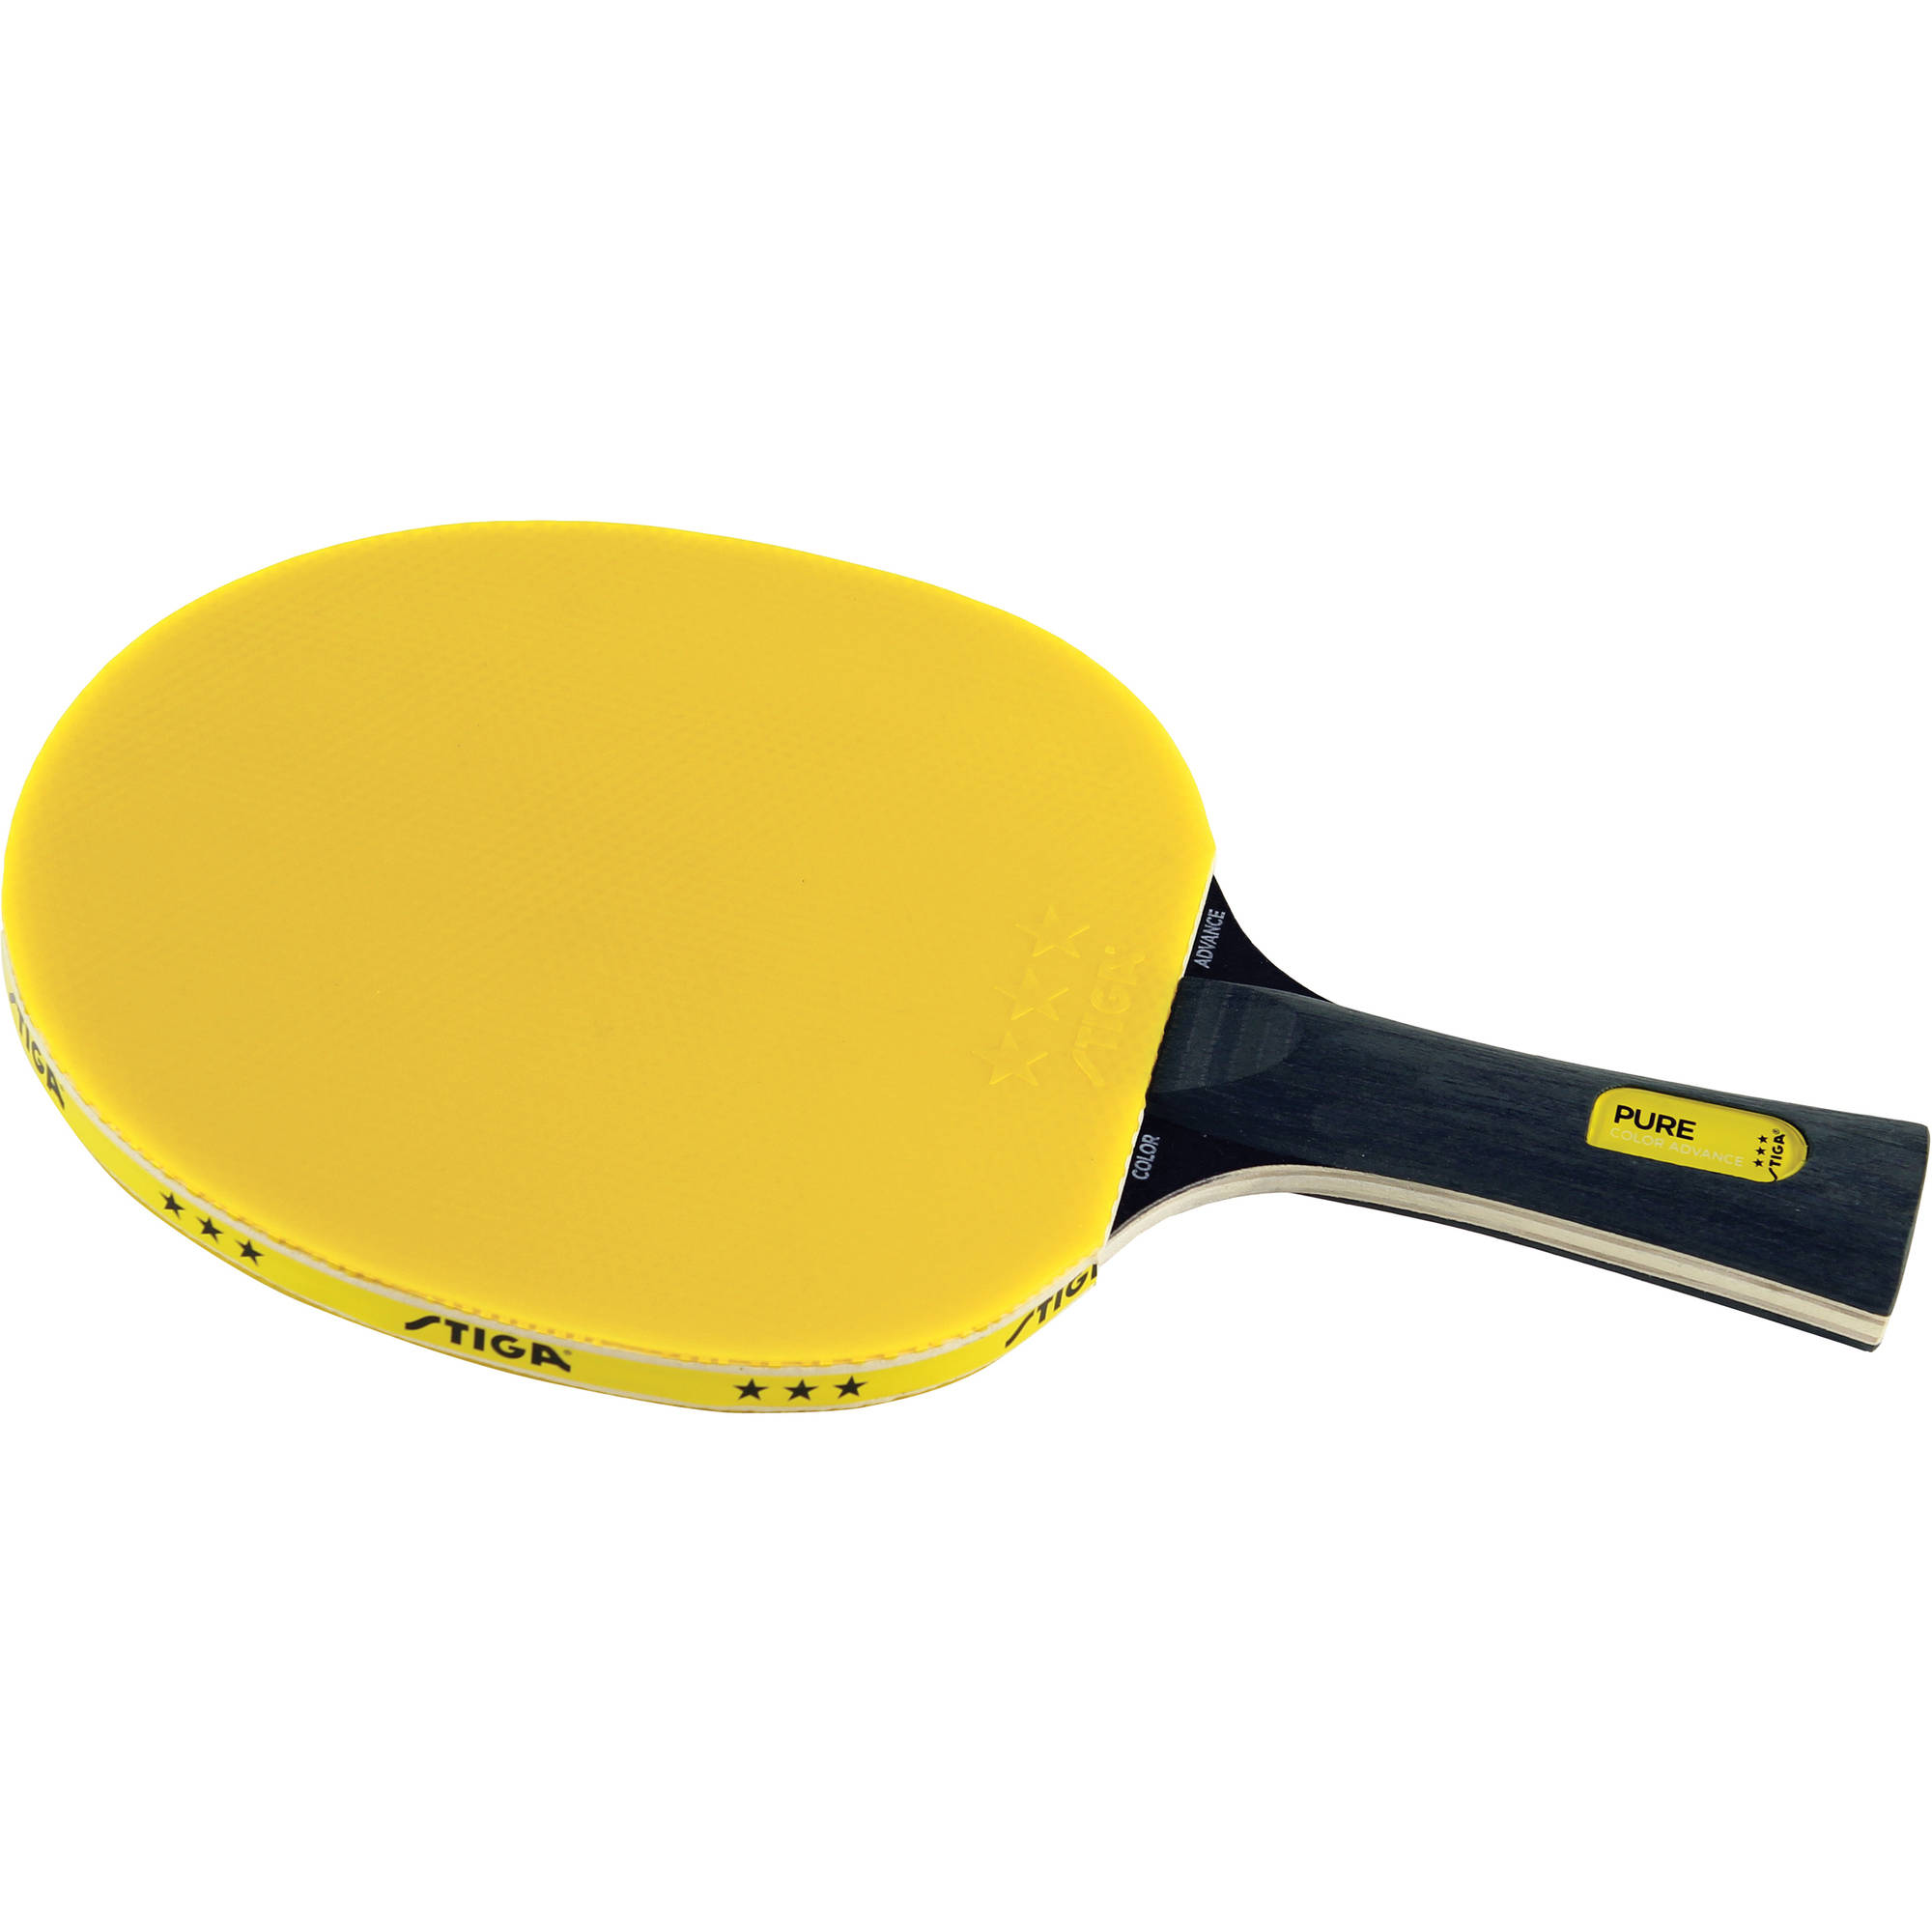 Detail Nike Ping Pong Paddles Nomer 34